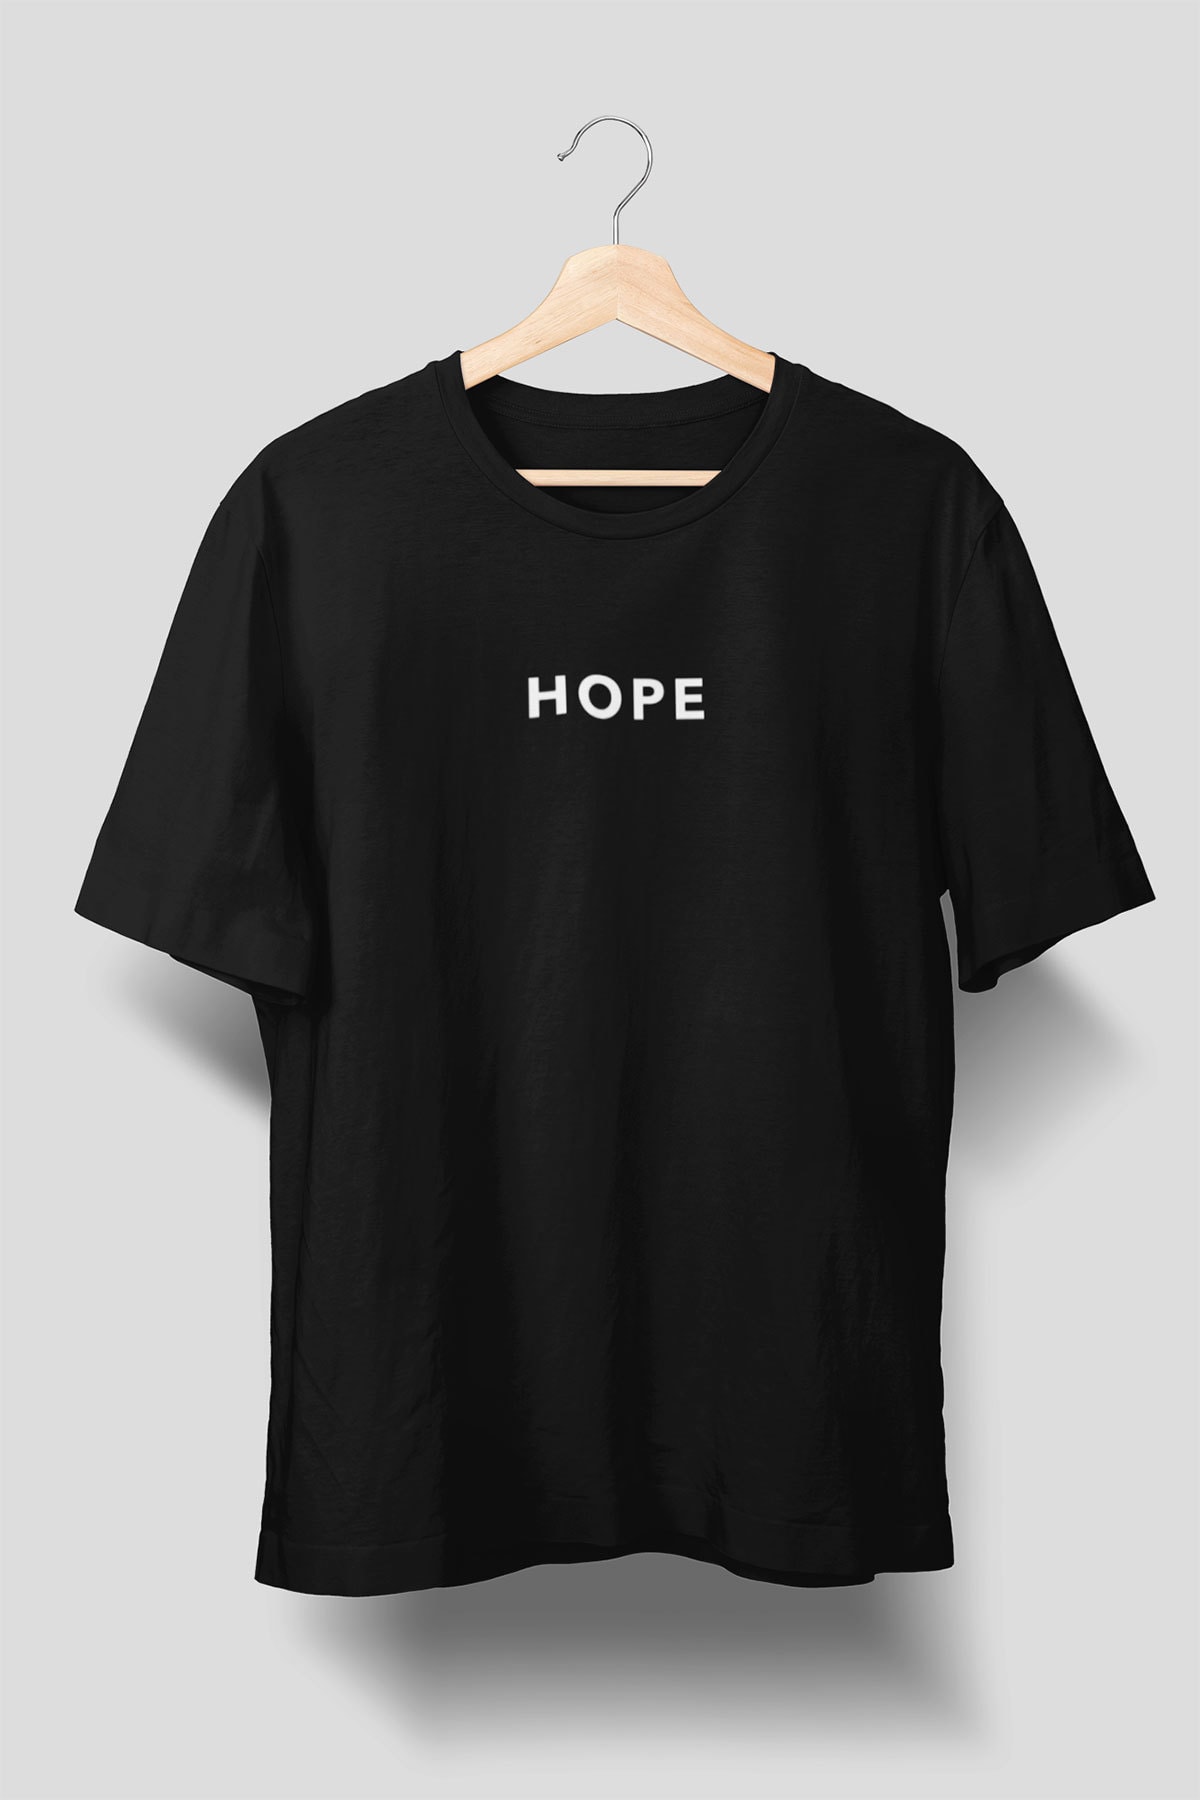 TZBK Company Hope Yazı Baskılı Tişört